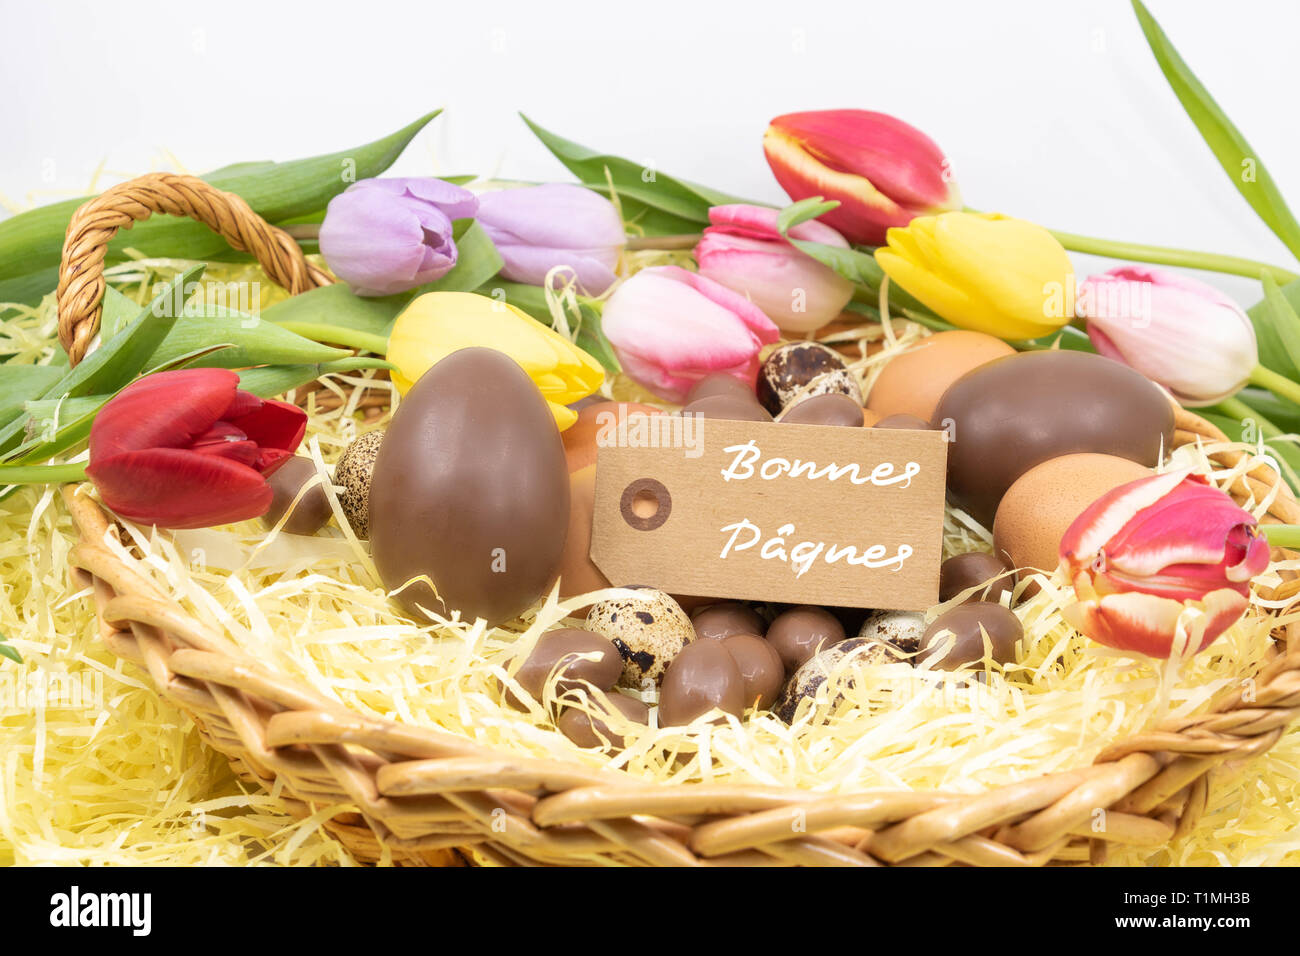 Joyeuses Pâques (bonnes Pâques Joyeuses Pâques est rédigé en français) sur une étiquette entouré de tulipes pastel et différents oeufs de Pâques Banque D'Images